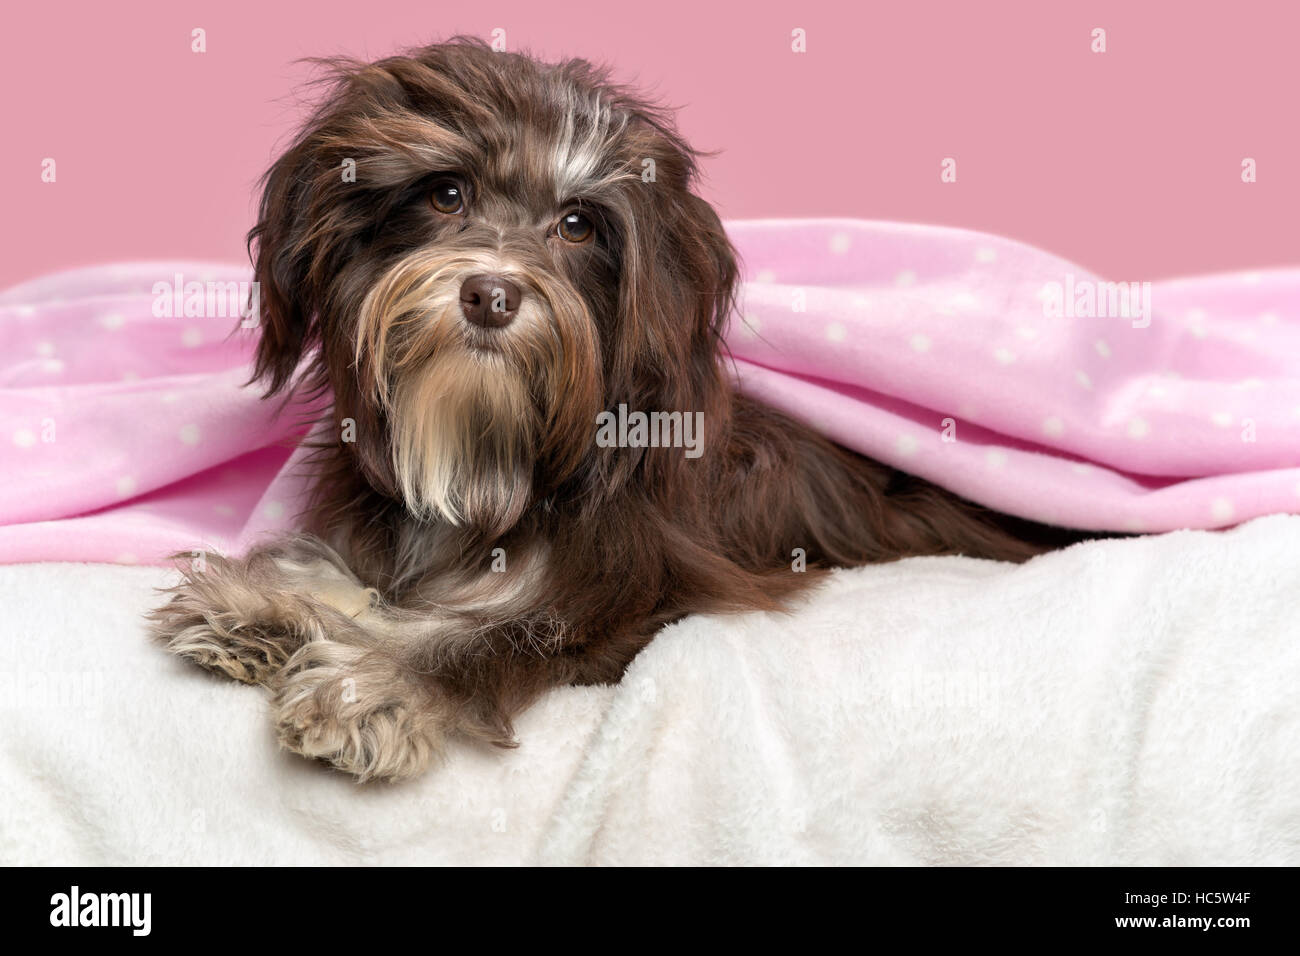 Bichon Havanais marron chien mignon couché dans un lit sous une couverture rose, devant un fond mauve Banque D'Images